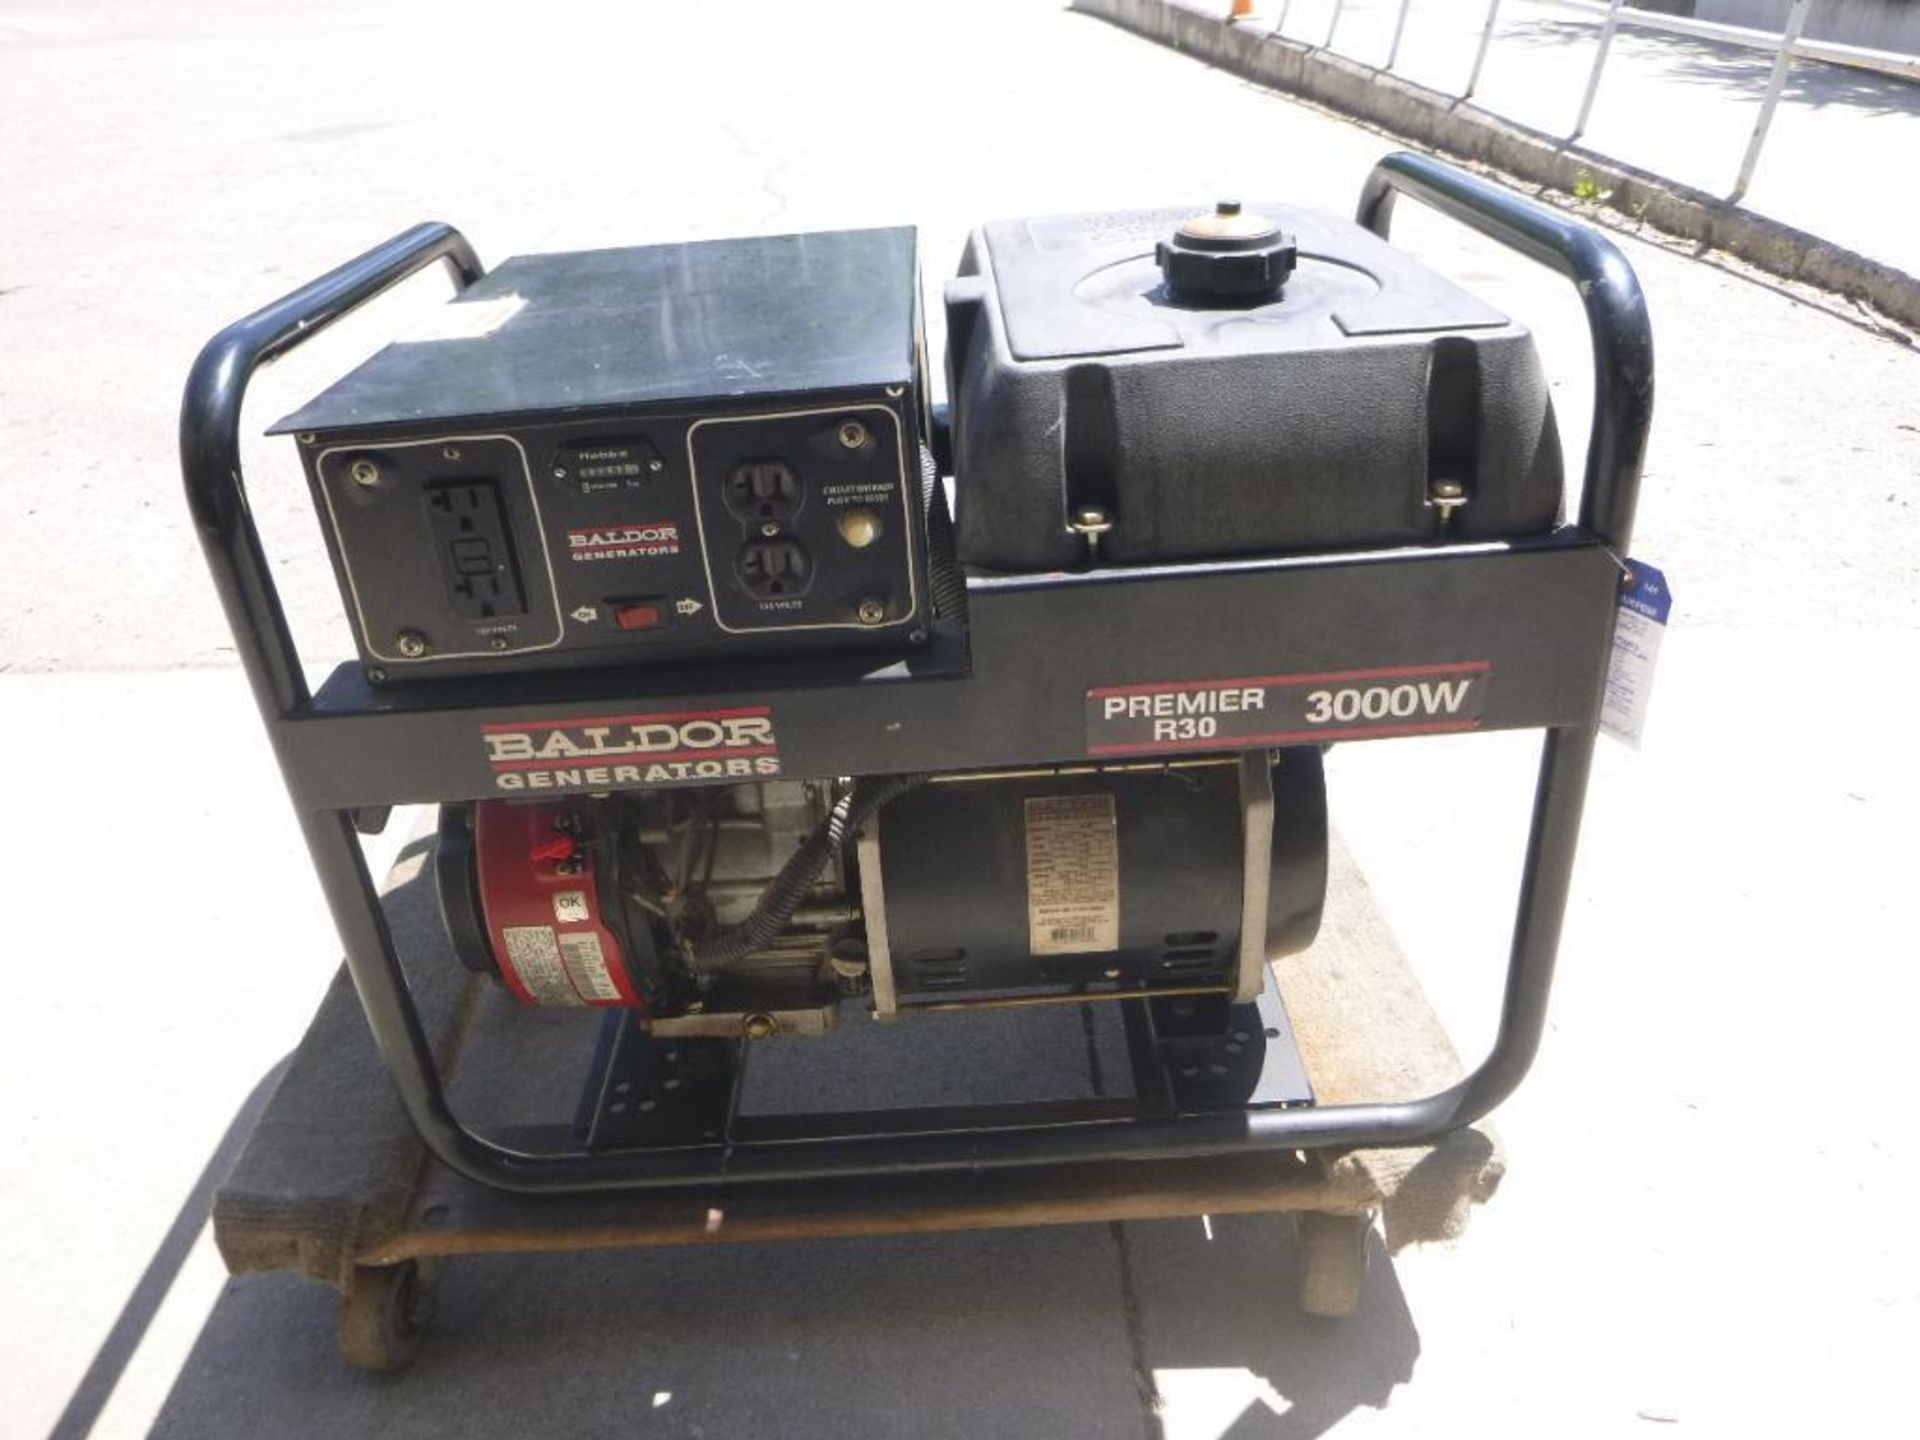 Baldor R30, Generator, 3000 Watt - Image 2 of 8